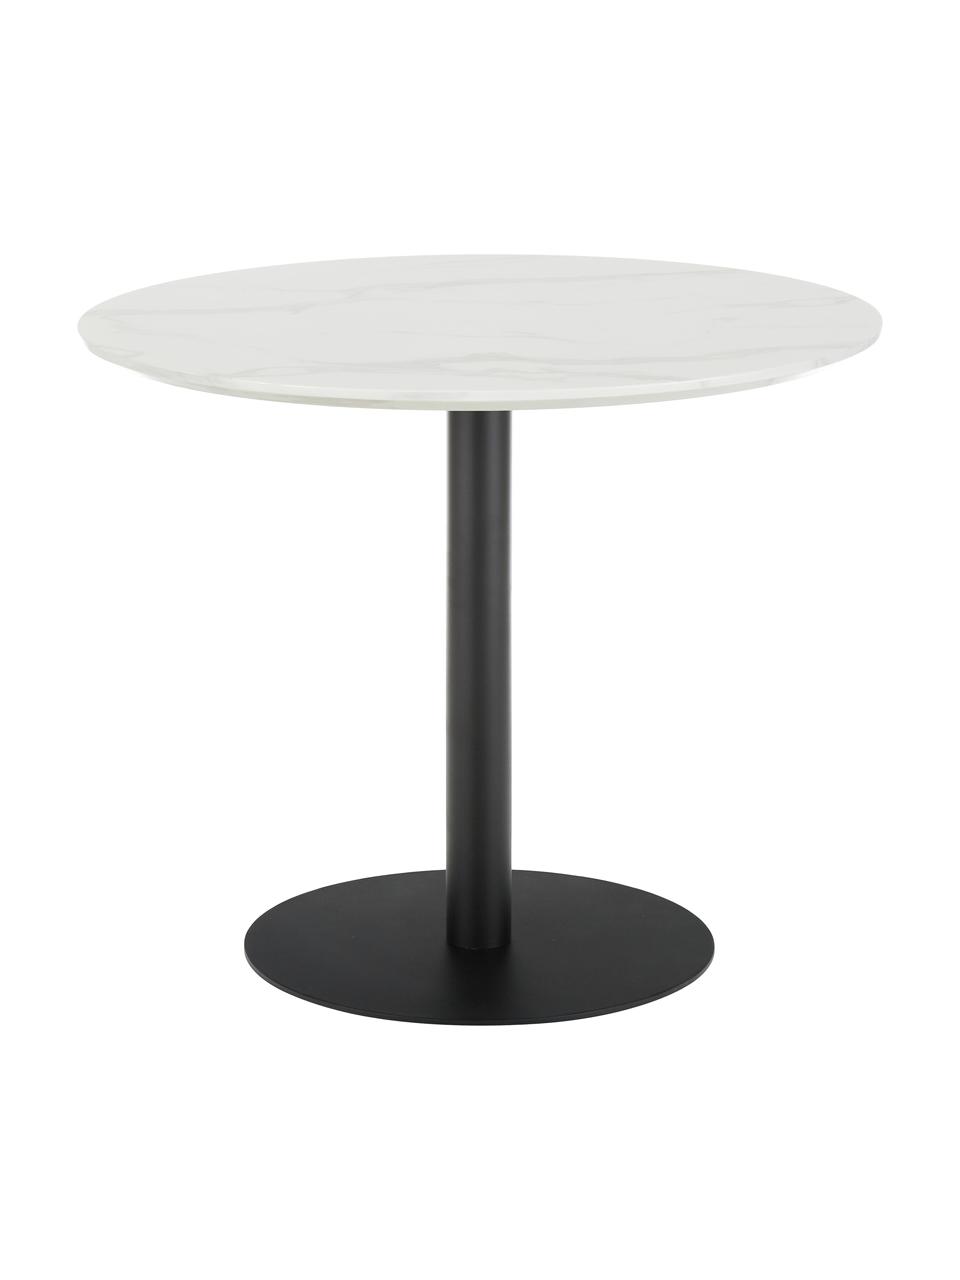 Kulatý jídelní stůl s mramorováním Karla, Ø 90 cm, Bílá, mramorovaná, černá, Ø 90 cm, V 75 cm